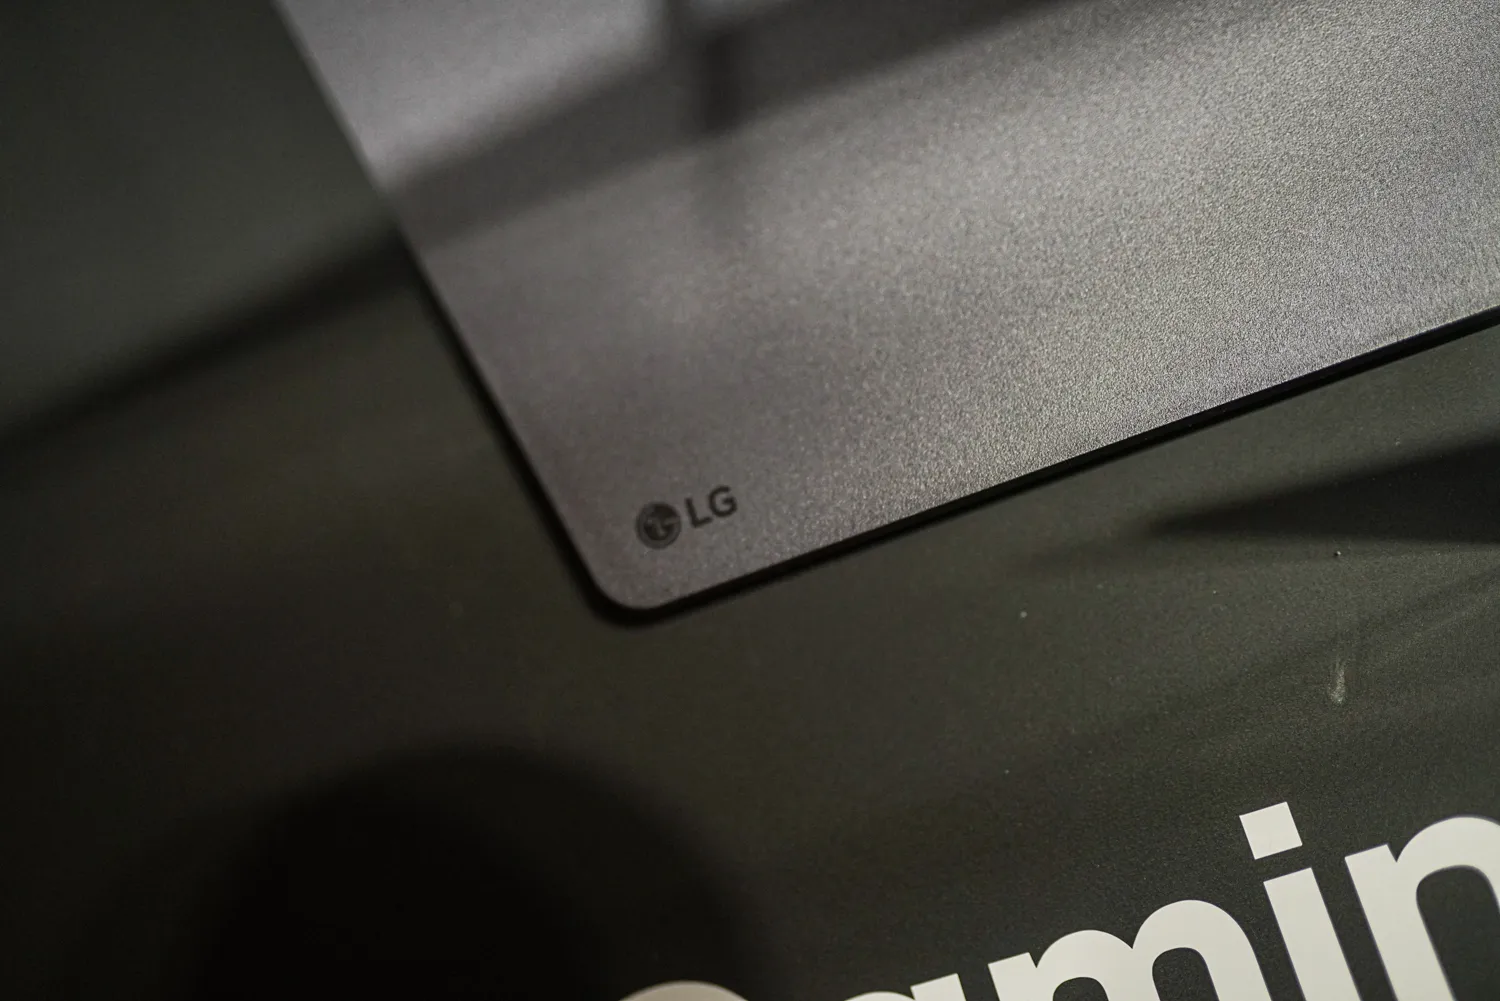 LG标志在显示器外壳上。